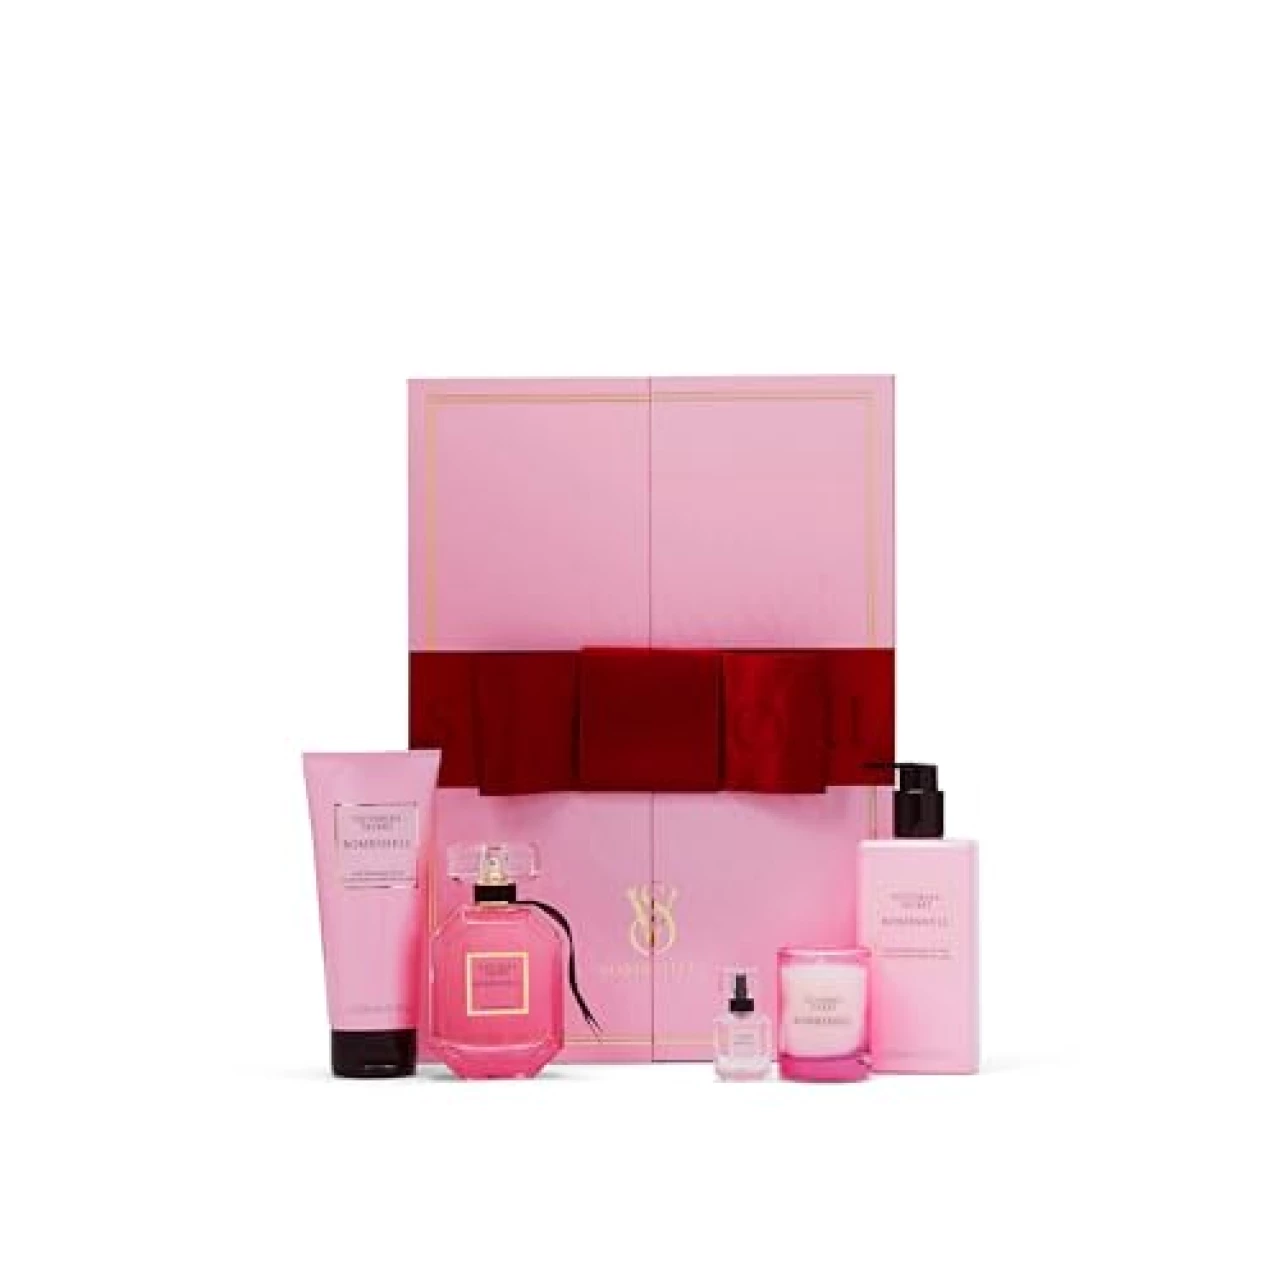 Victoria&rsquo;s Secret Bombshell Ultimate Fragrance 5 Piece Gift Set: 3.4oz Eau de Parfum, Mini Eau de Parfum, Candle, Lotion &amp; Wash